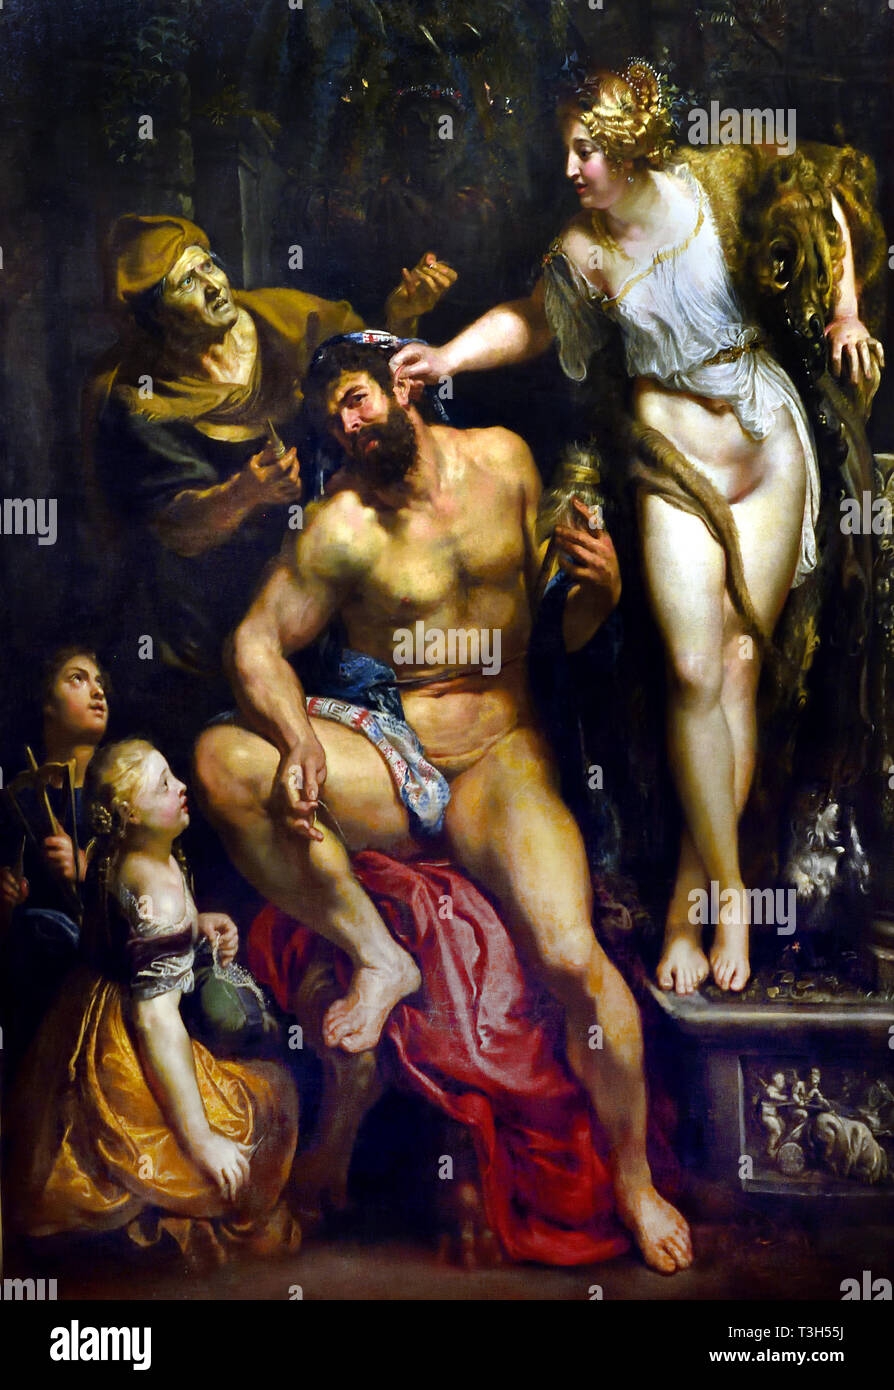 Hercule et Omphale par Peter Paul Rubens 1577-1640 Belgique Belge Flamande ( Hercules est tombé sous le charme d'Omphale, Reine de Lydie, et est réduit à la filature de laine, la fusée et la quenouille en main ) Banque D'Images